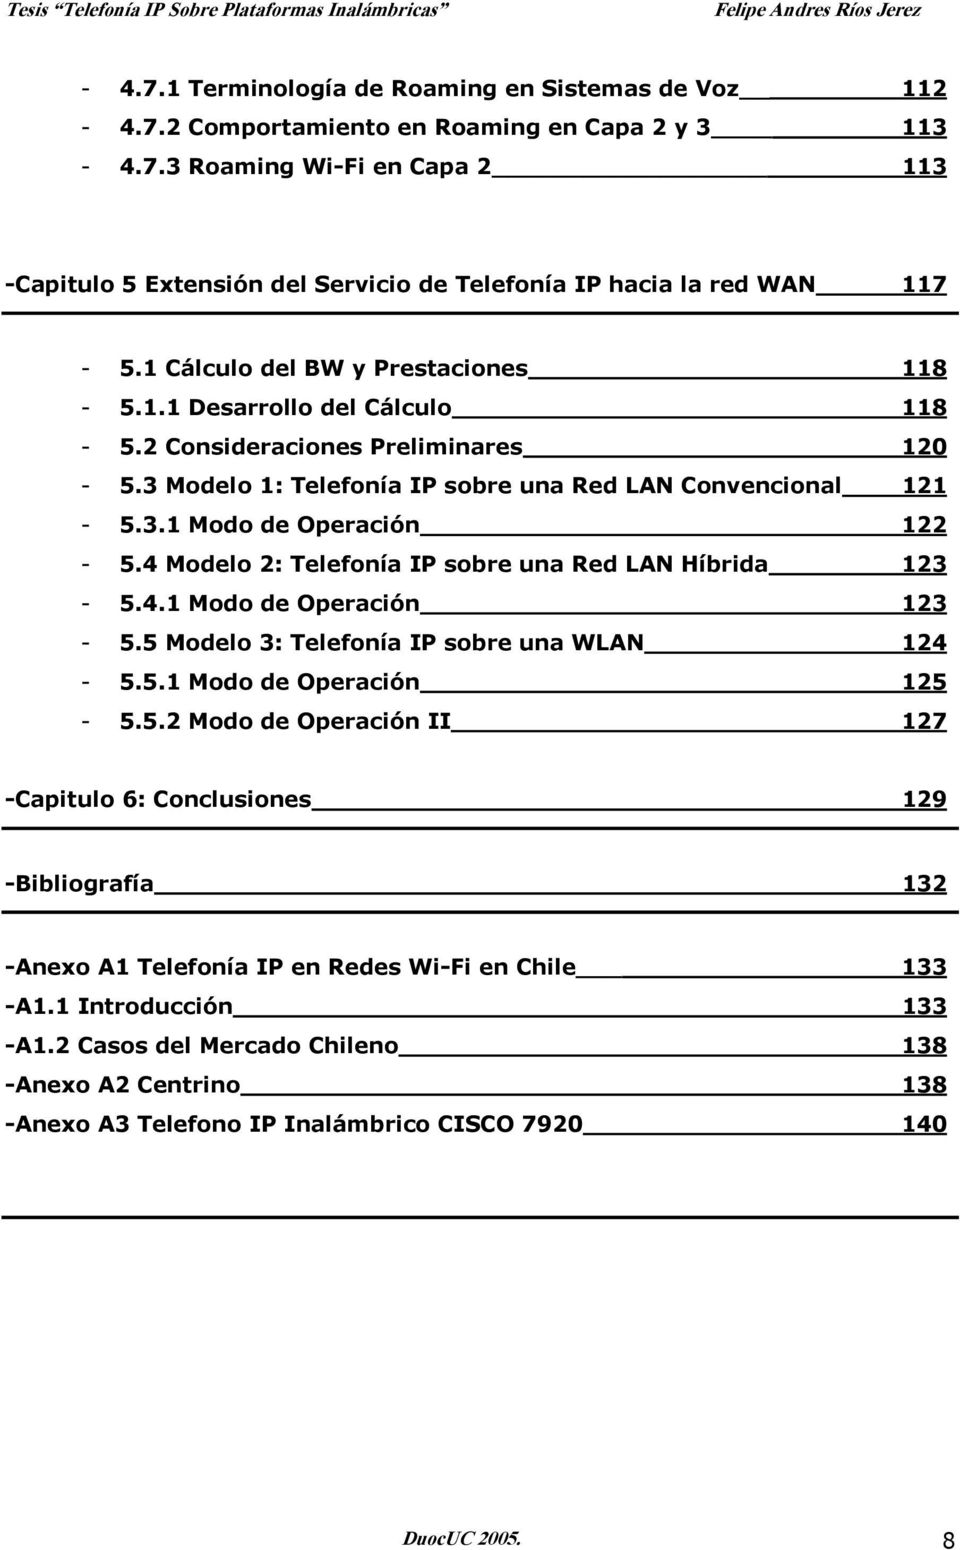 4 Modelo 2: Telefonía IP sobre una Red LAN Híbrida 123-5.4.1 Modo de Operación 123-5.5 Modelo 3: Telefonía IP sobre una WLAN 124-5.5.1 Modo de Operación 125-5.5.2 Modo de Operación II 127 -Capitulo 6: Conclusiones 129 -Bibliografía 132 -Anexo A1 Telefonía IP en Redes Wi-Fi en Chile 133 -A1.